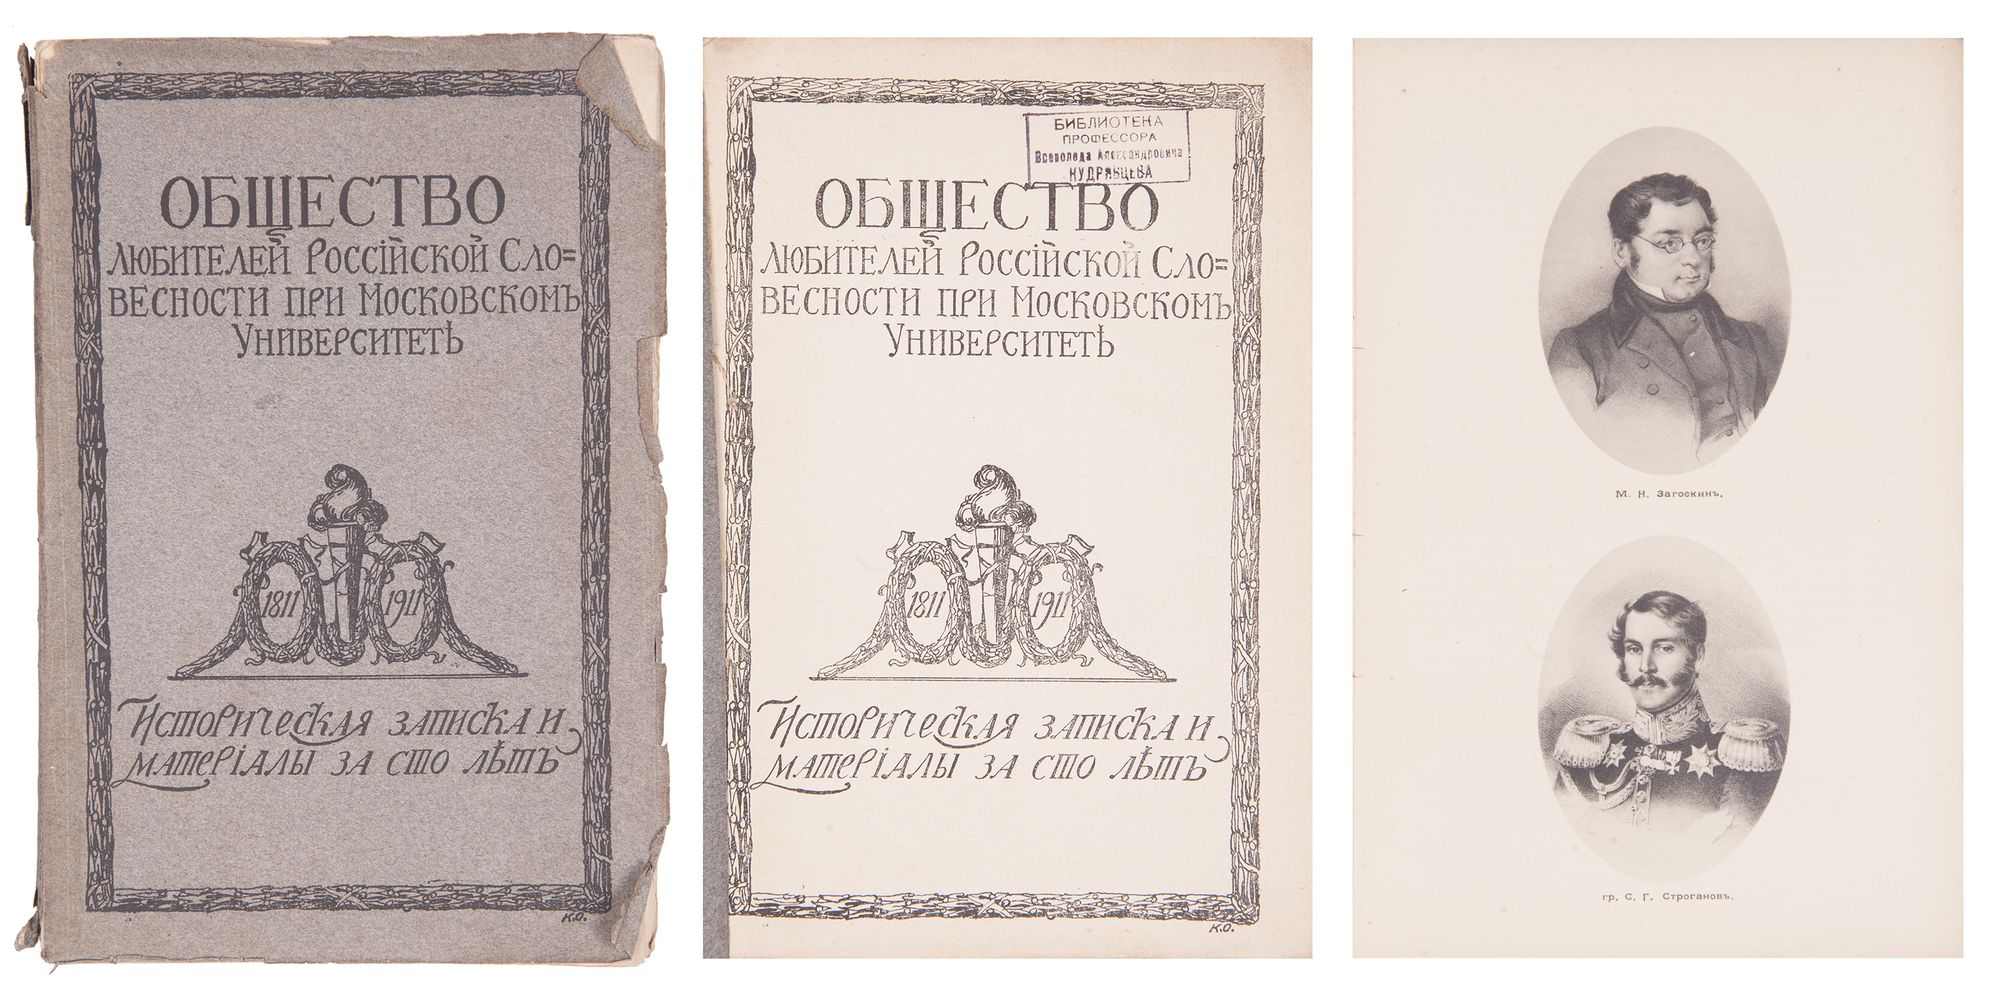 Общество любителей Российской словесности 1811-1930